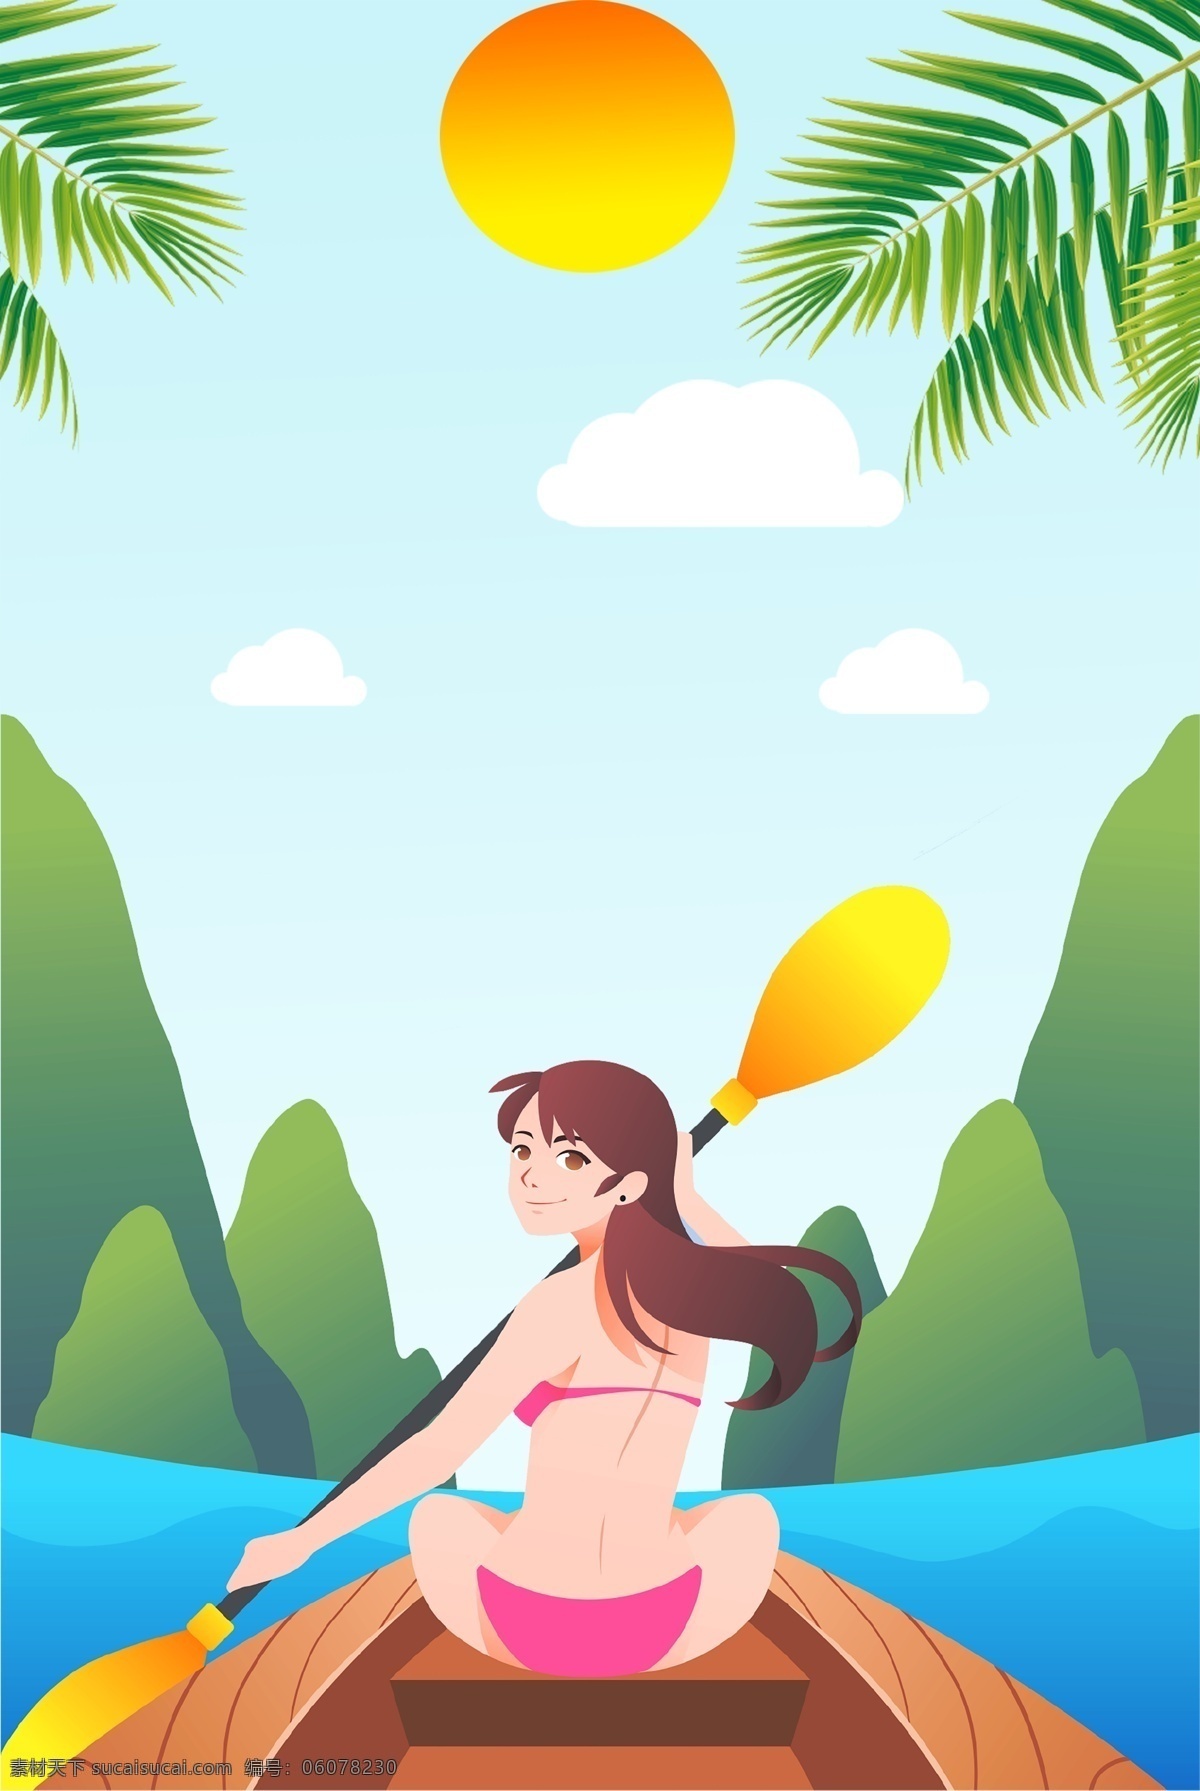 夏季 旅行 划船 女孩 清新 手绘 广告 背景